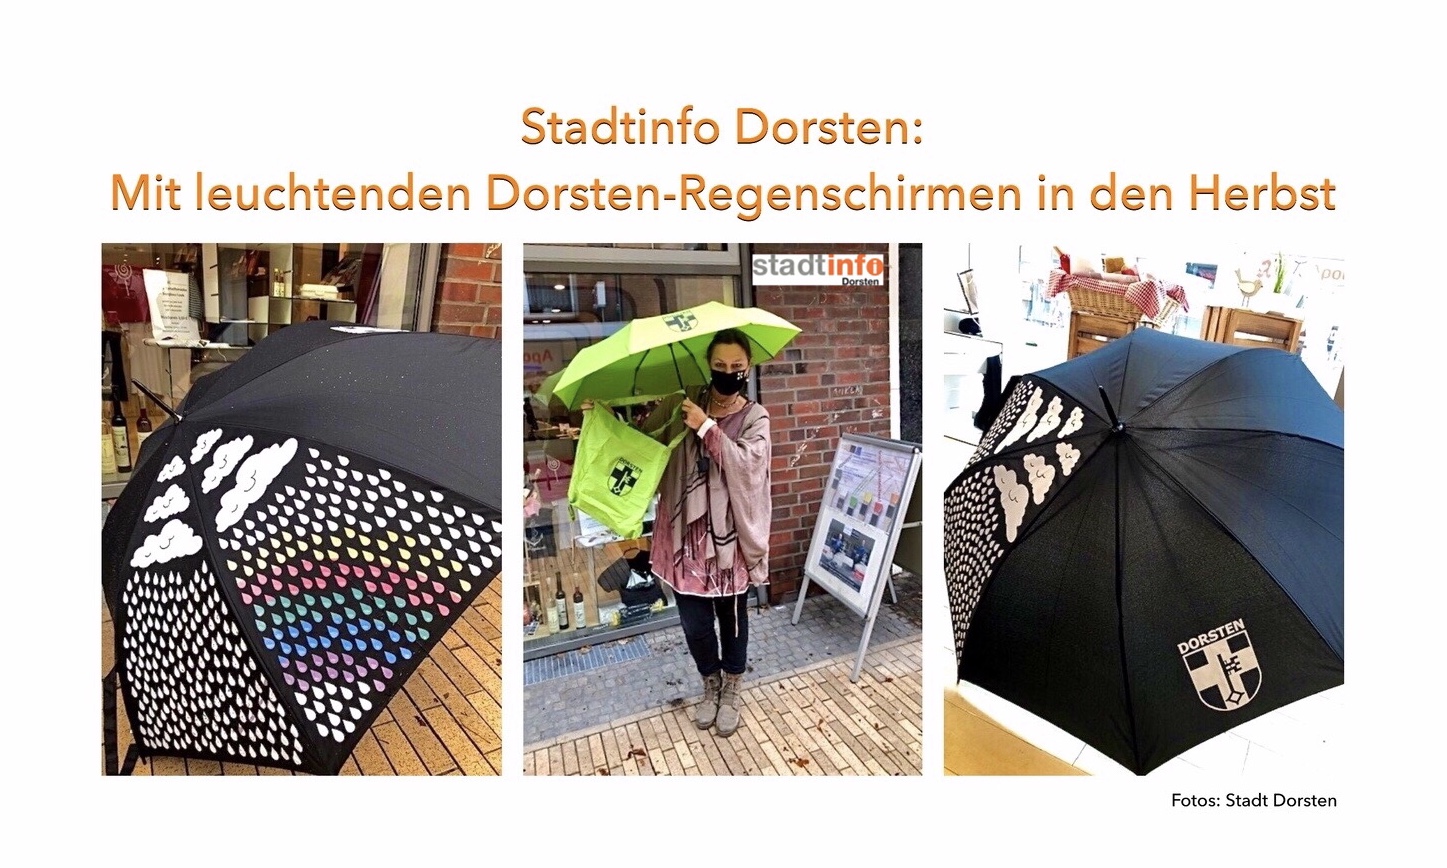 Leuchtende Dorsten-Regenschirme mit Stadlogo nun in der Stadtinfo erhältlich